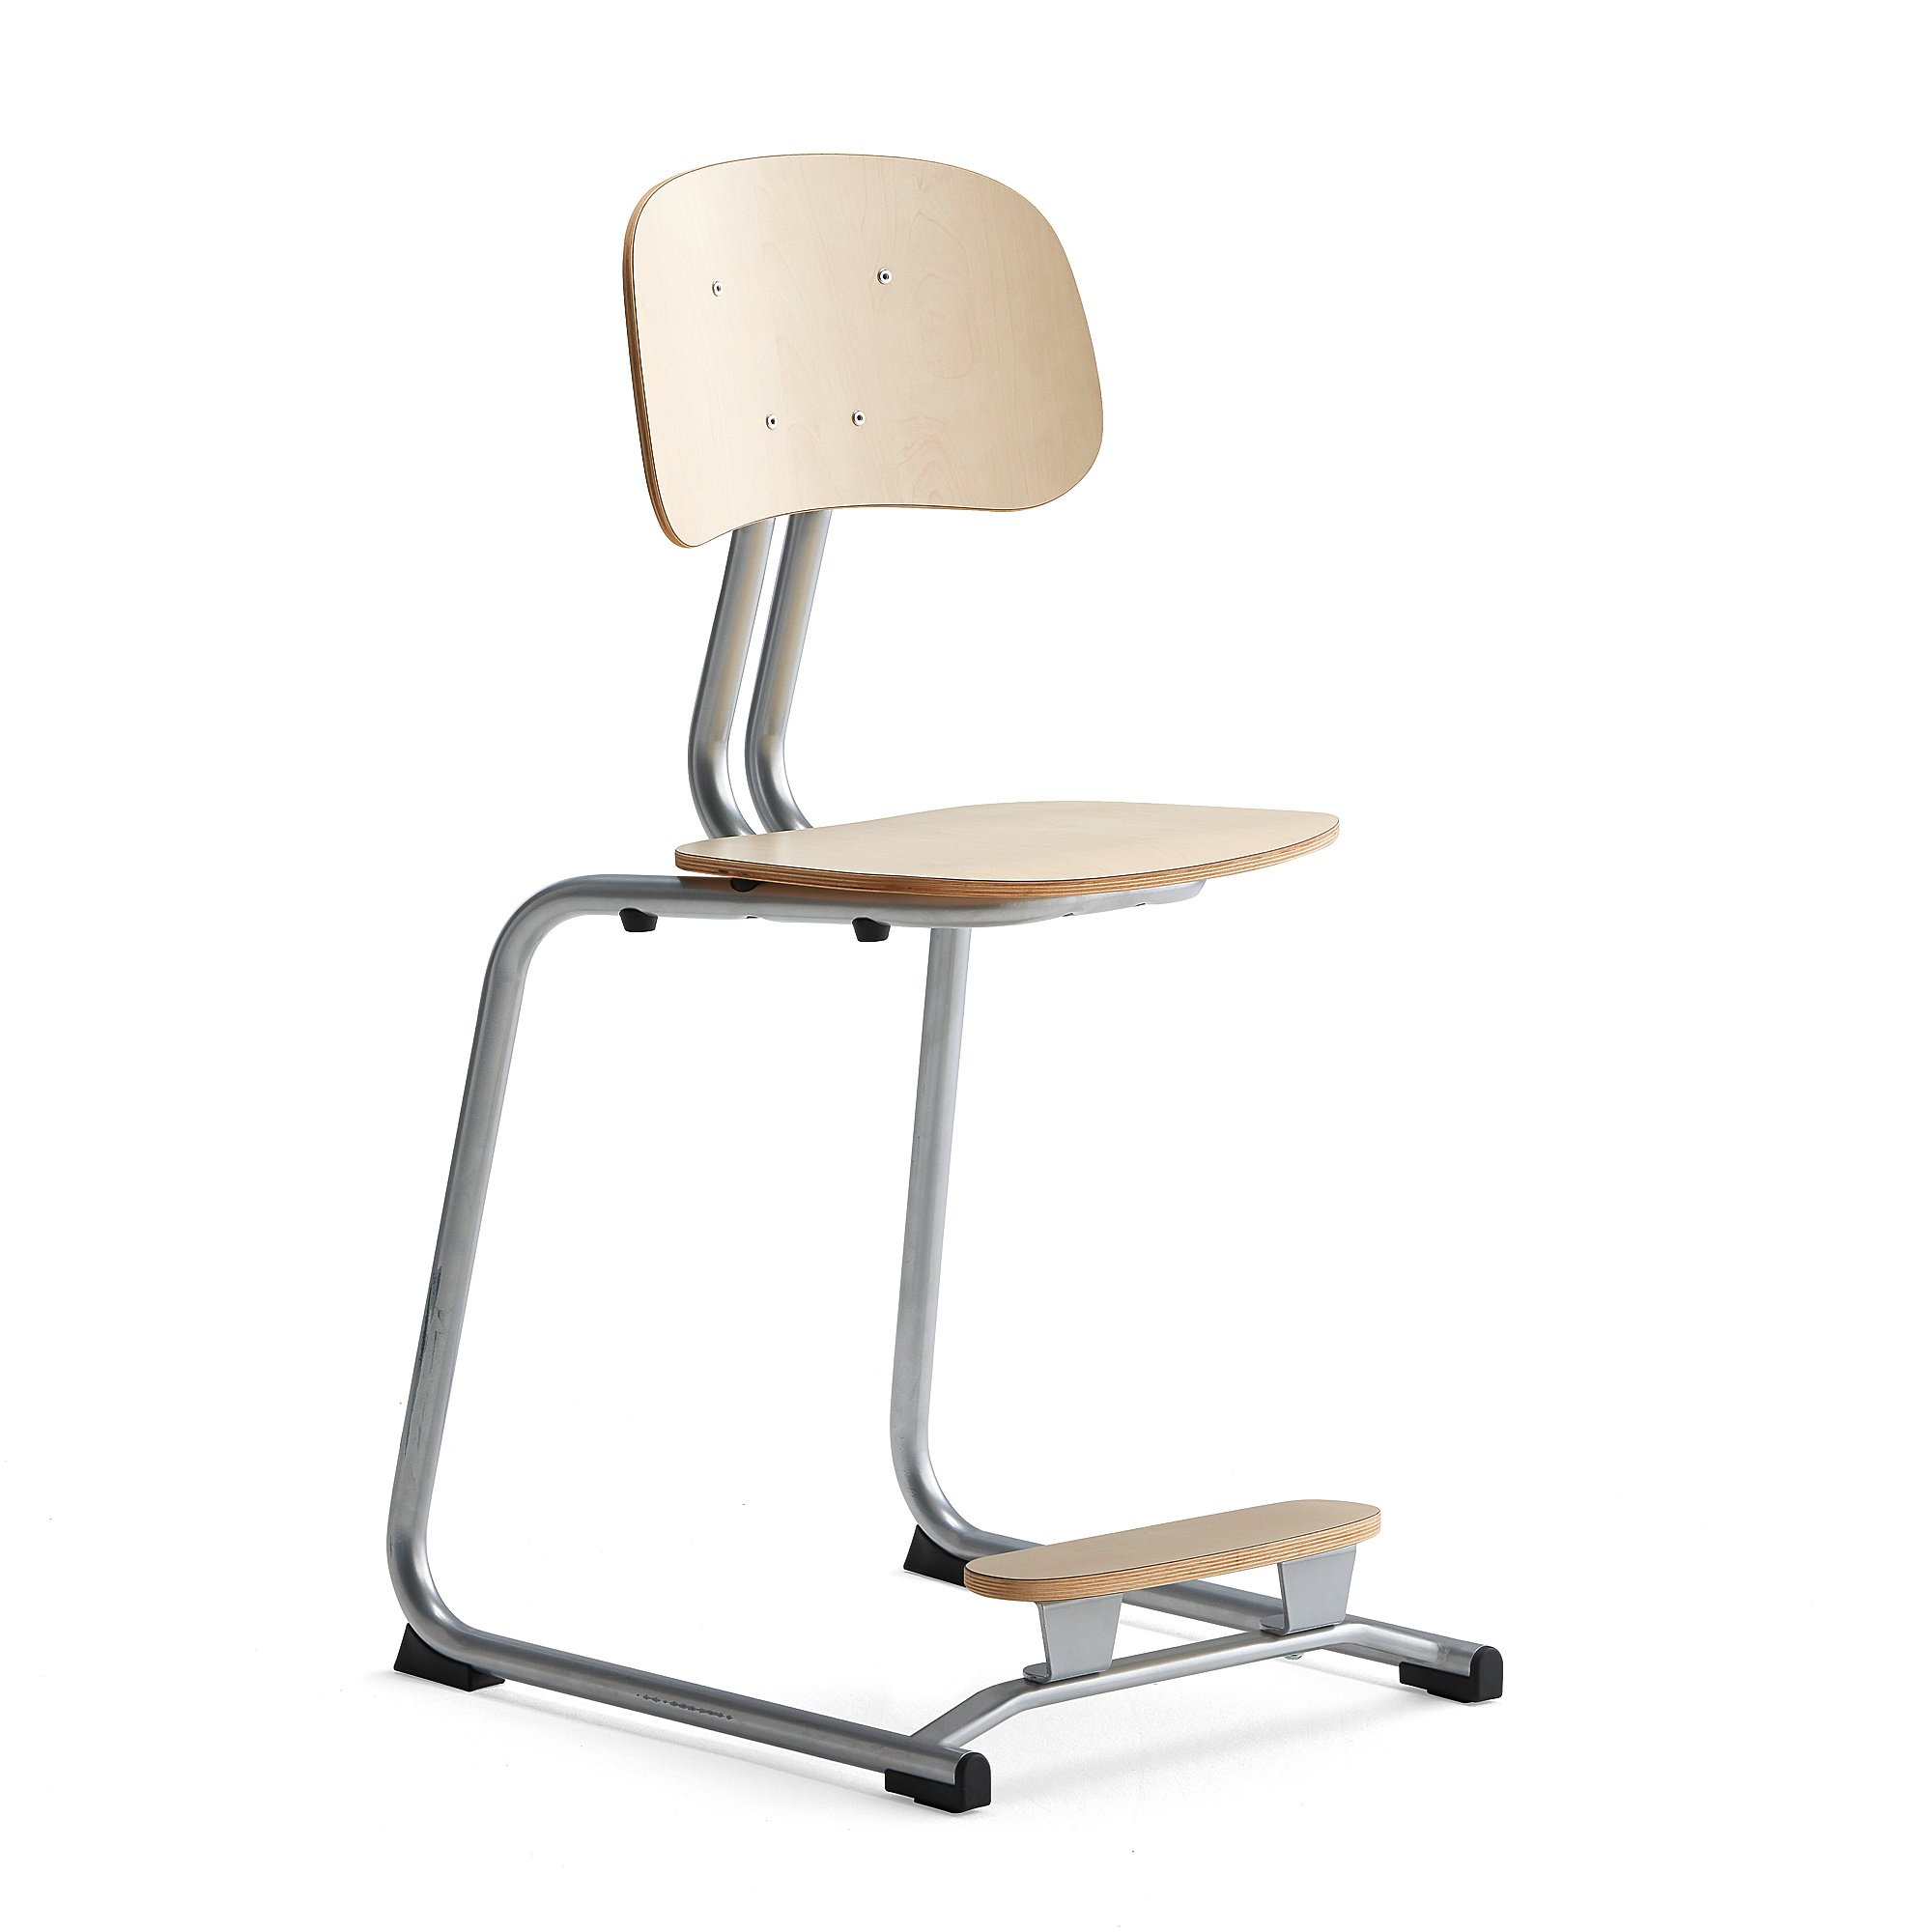 Školní židle YNGVE, ližinová podnož, výška 500 mm, stříbrná/bříza